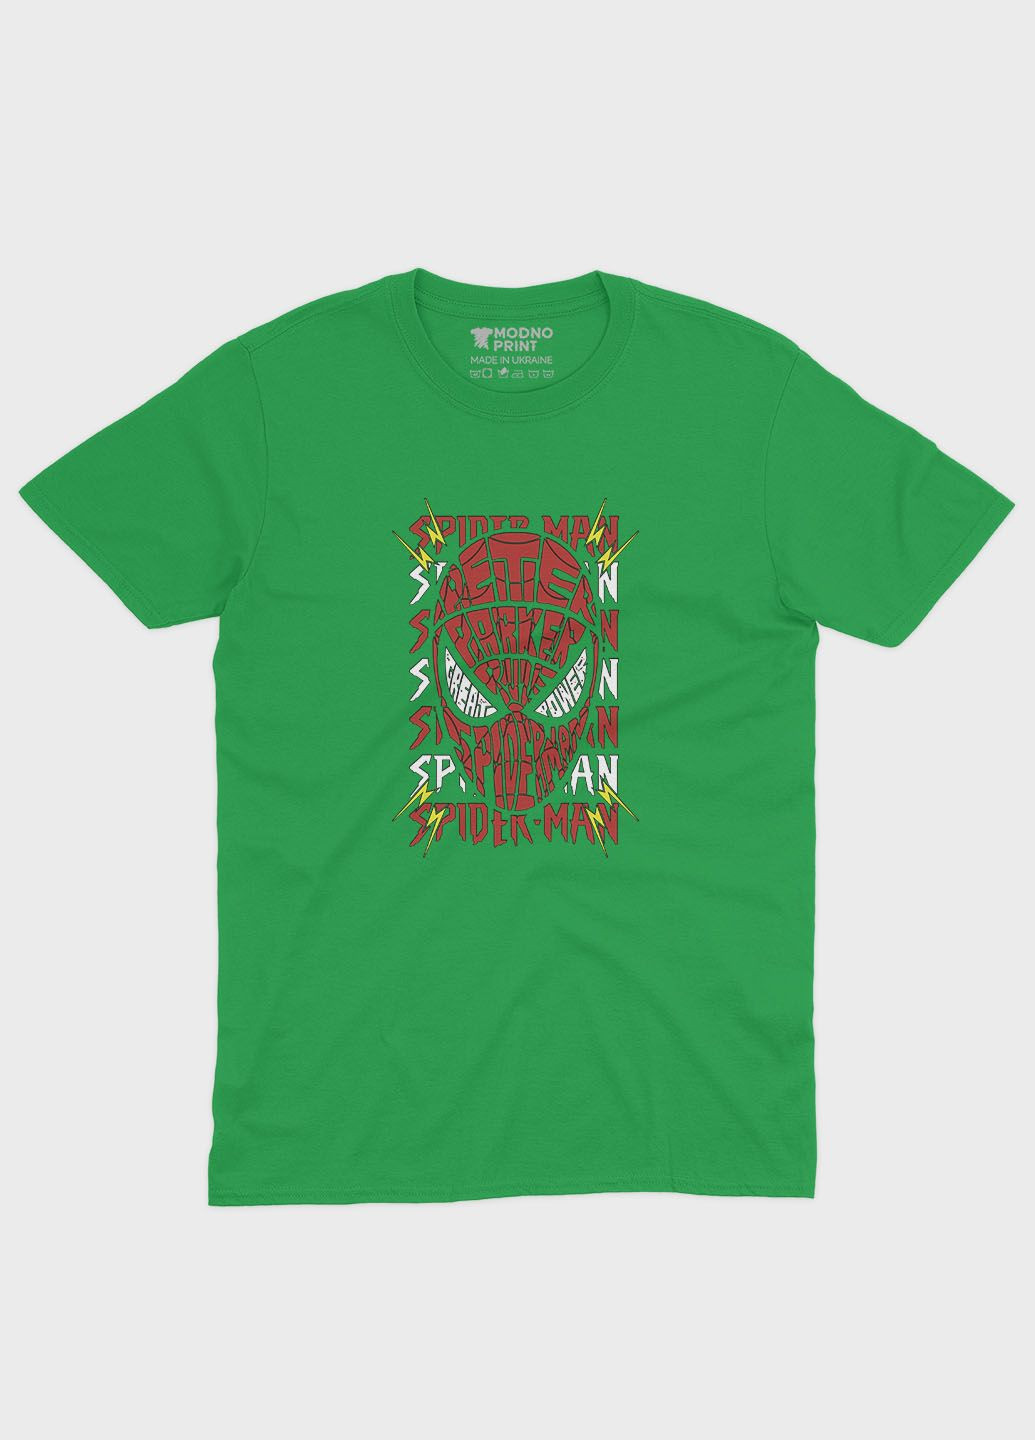 Зеленая демисезонная футболка для мальчика с принтом супергероя - человек-паук (ts001-1-keg-006-014-031-b) Modno